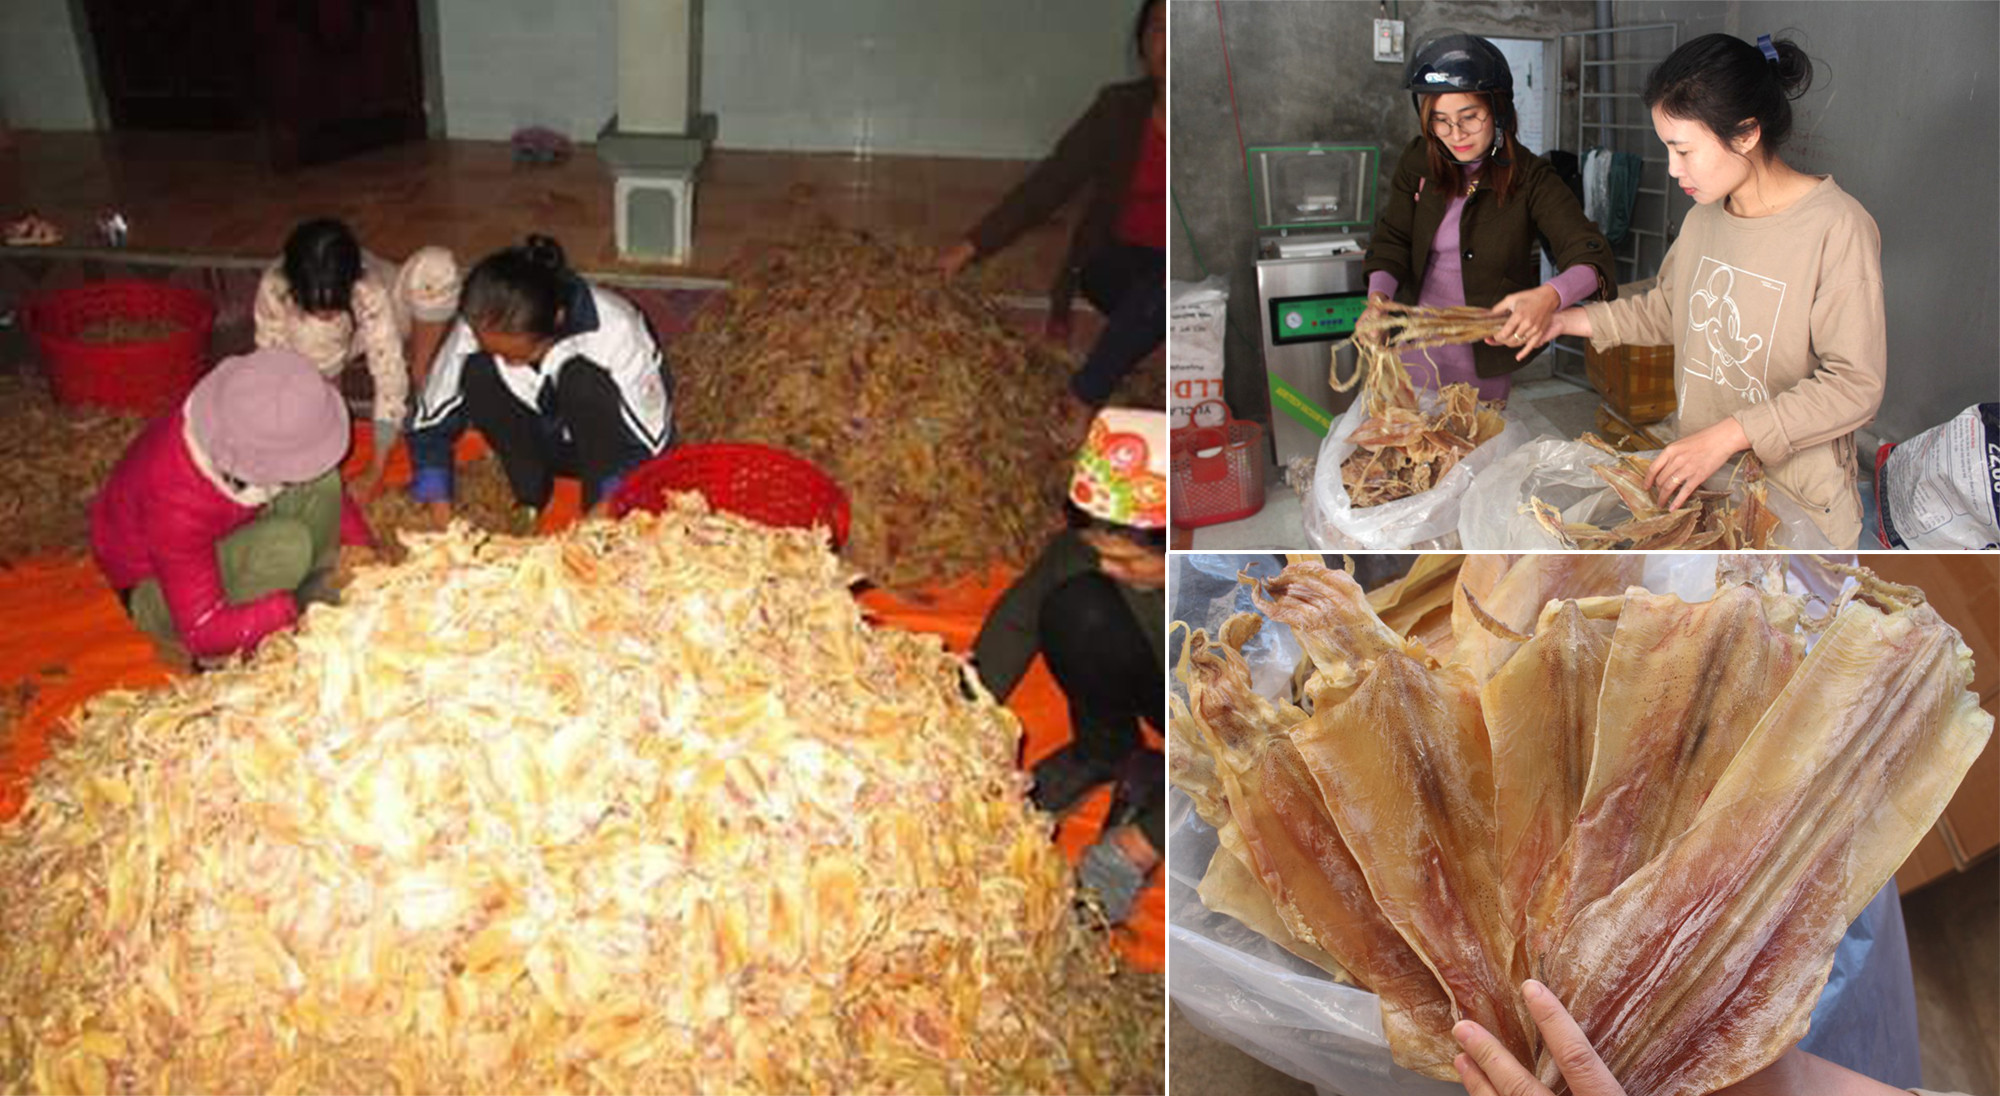 Hiện nay các cơ sở thu mua hải sản ở Quỳnh Lưu đang tập trung gom hàng để phục vụ cho thị trường tết.